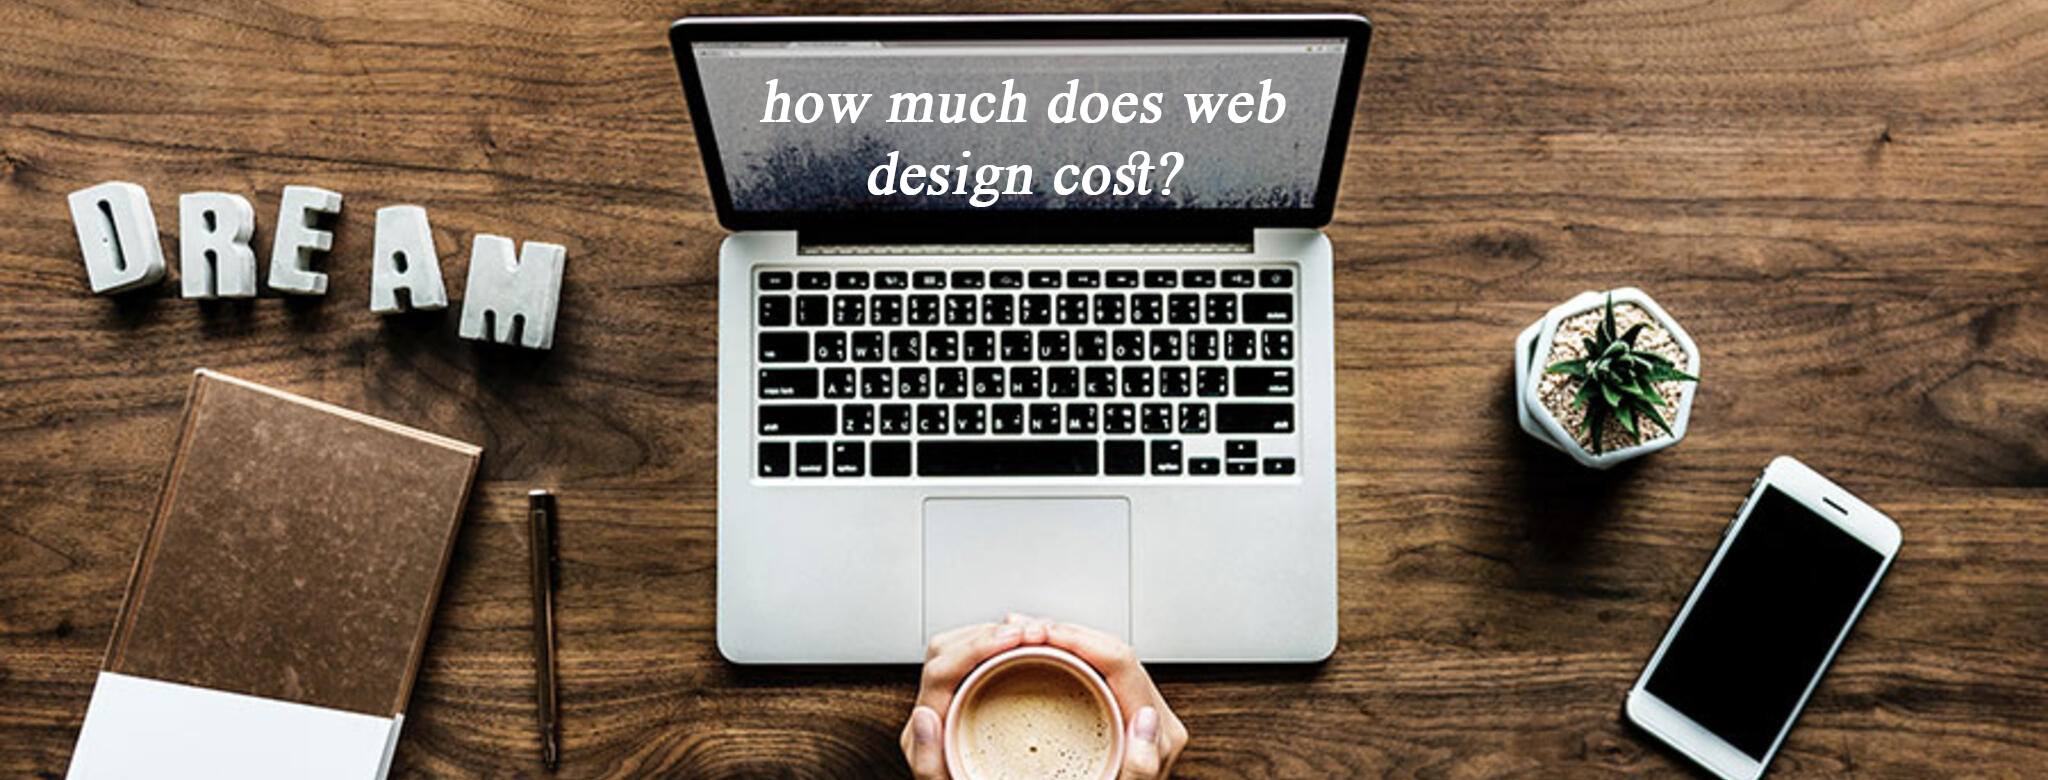 design-web-cost